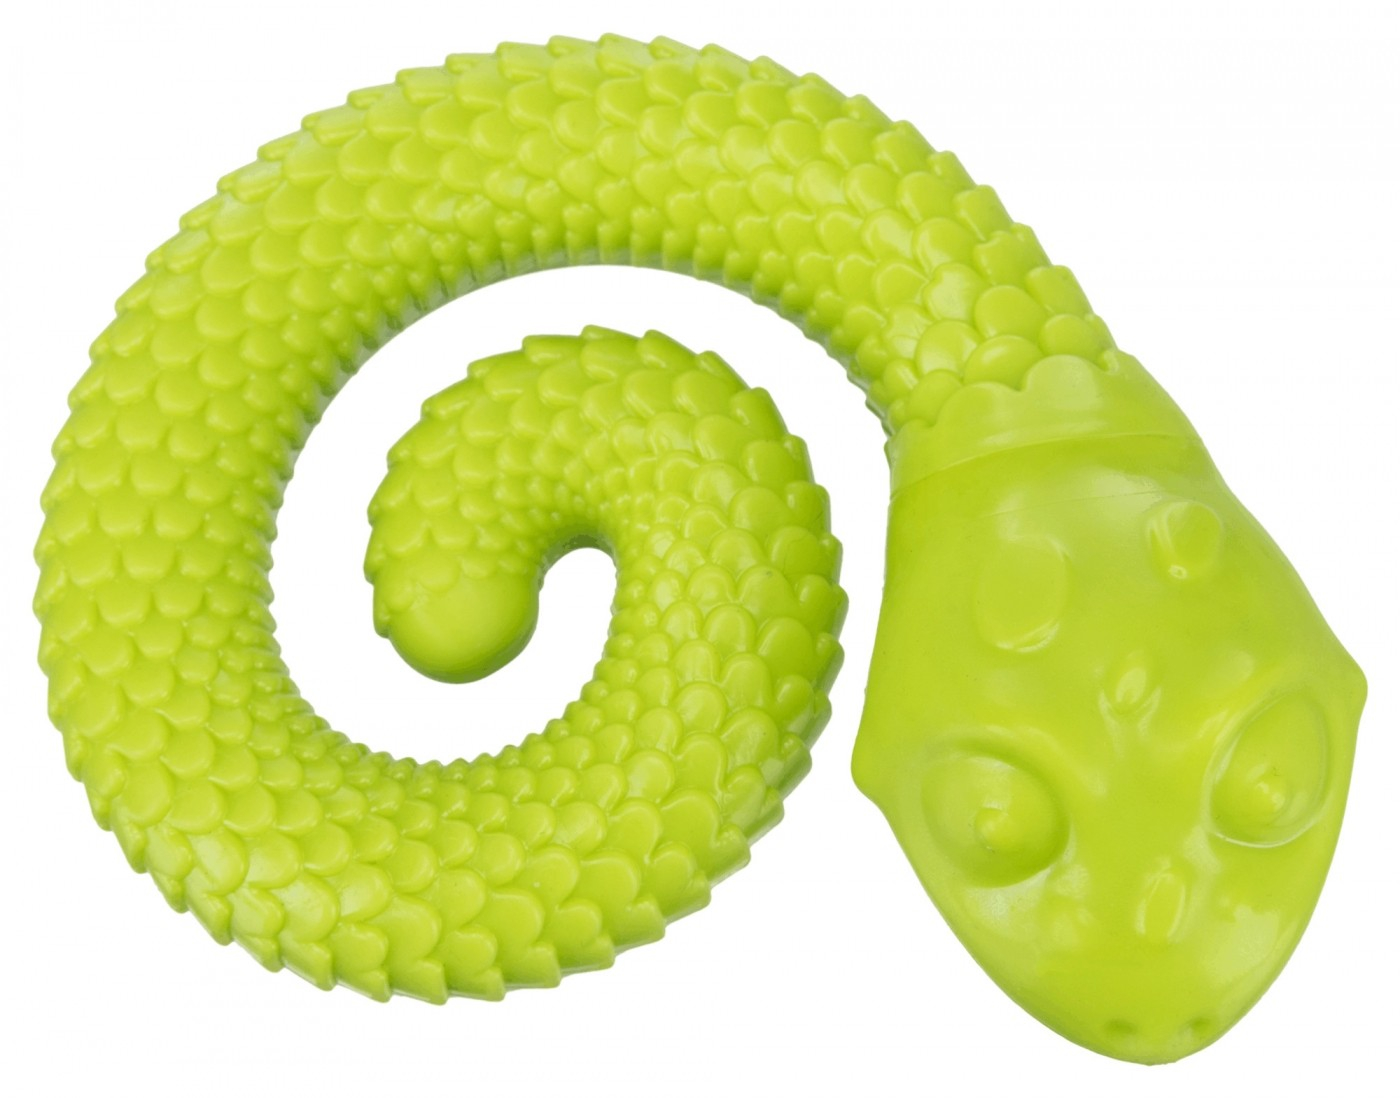 Queue à friandises Snack Snake en caoutchouc, diamètre 18 cm